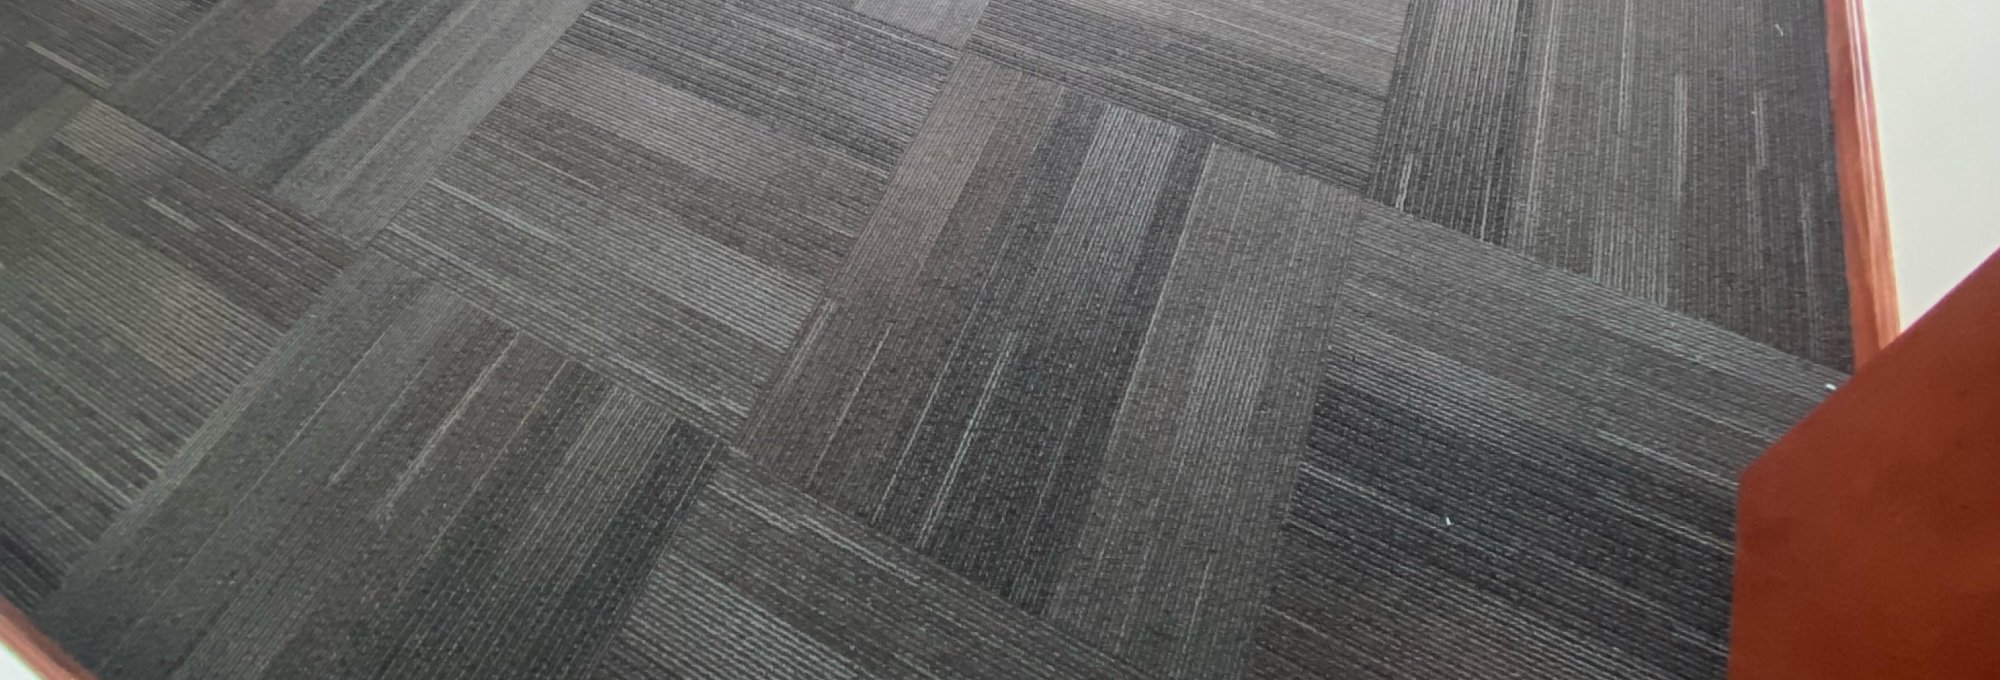 Roberts-Carpeting-Hero - Roberts Carpeting and Fine Floors in PA